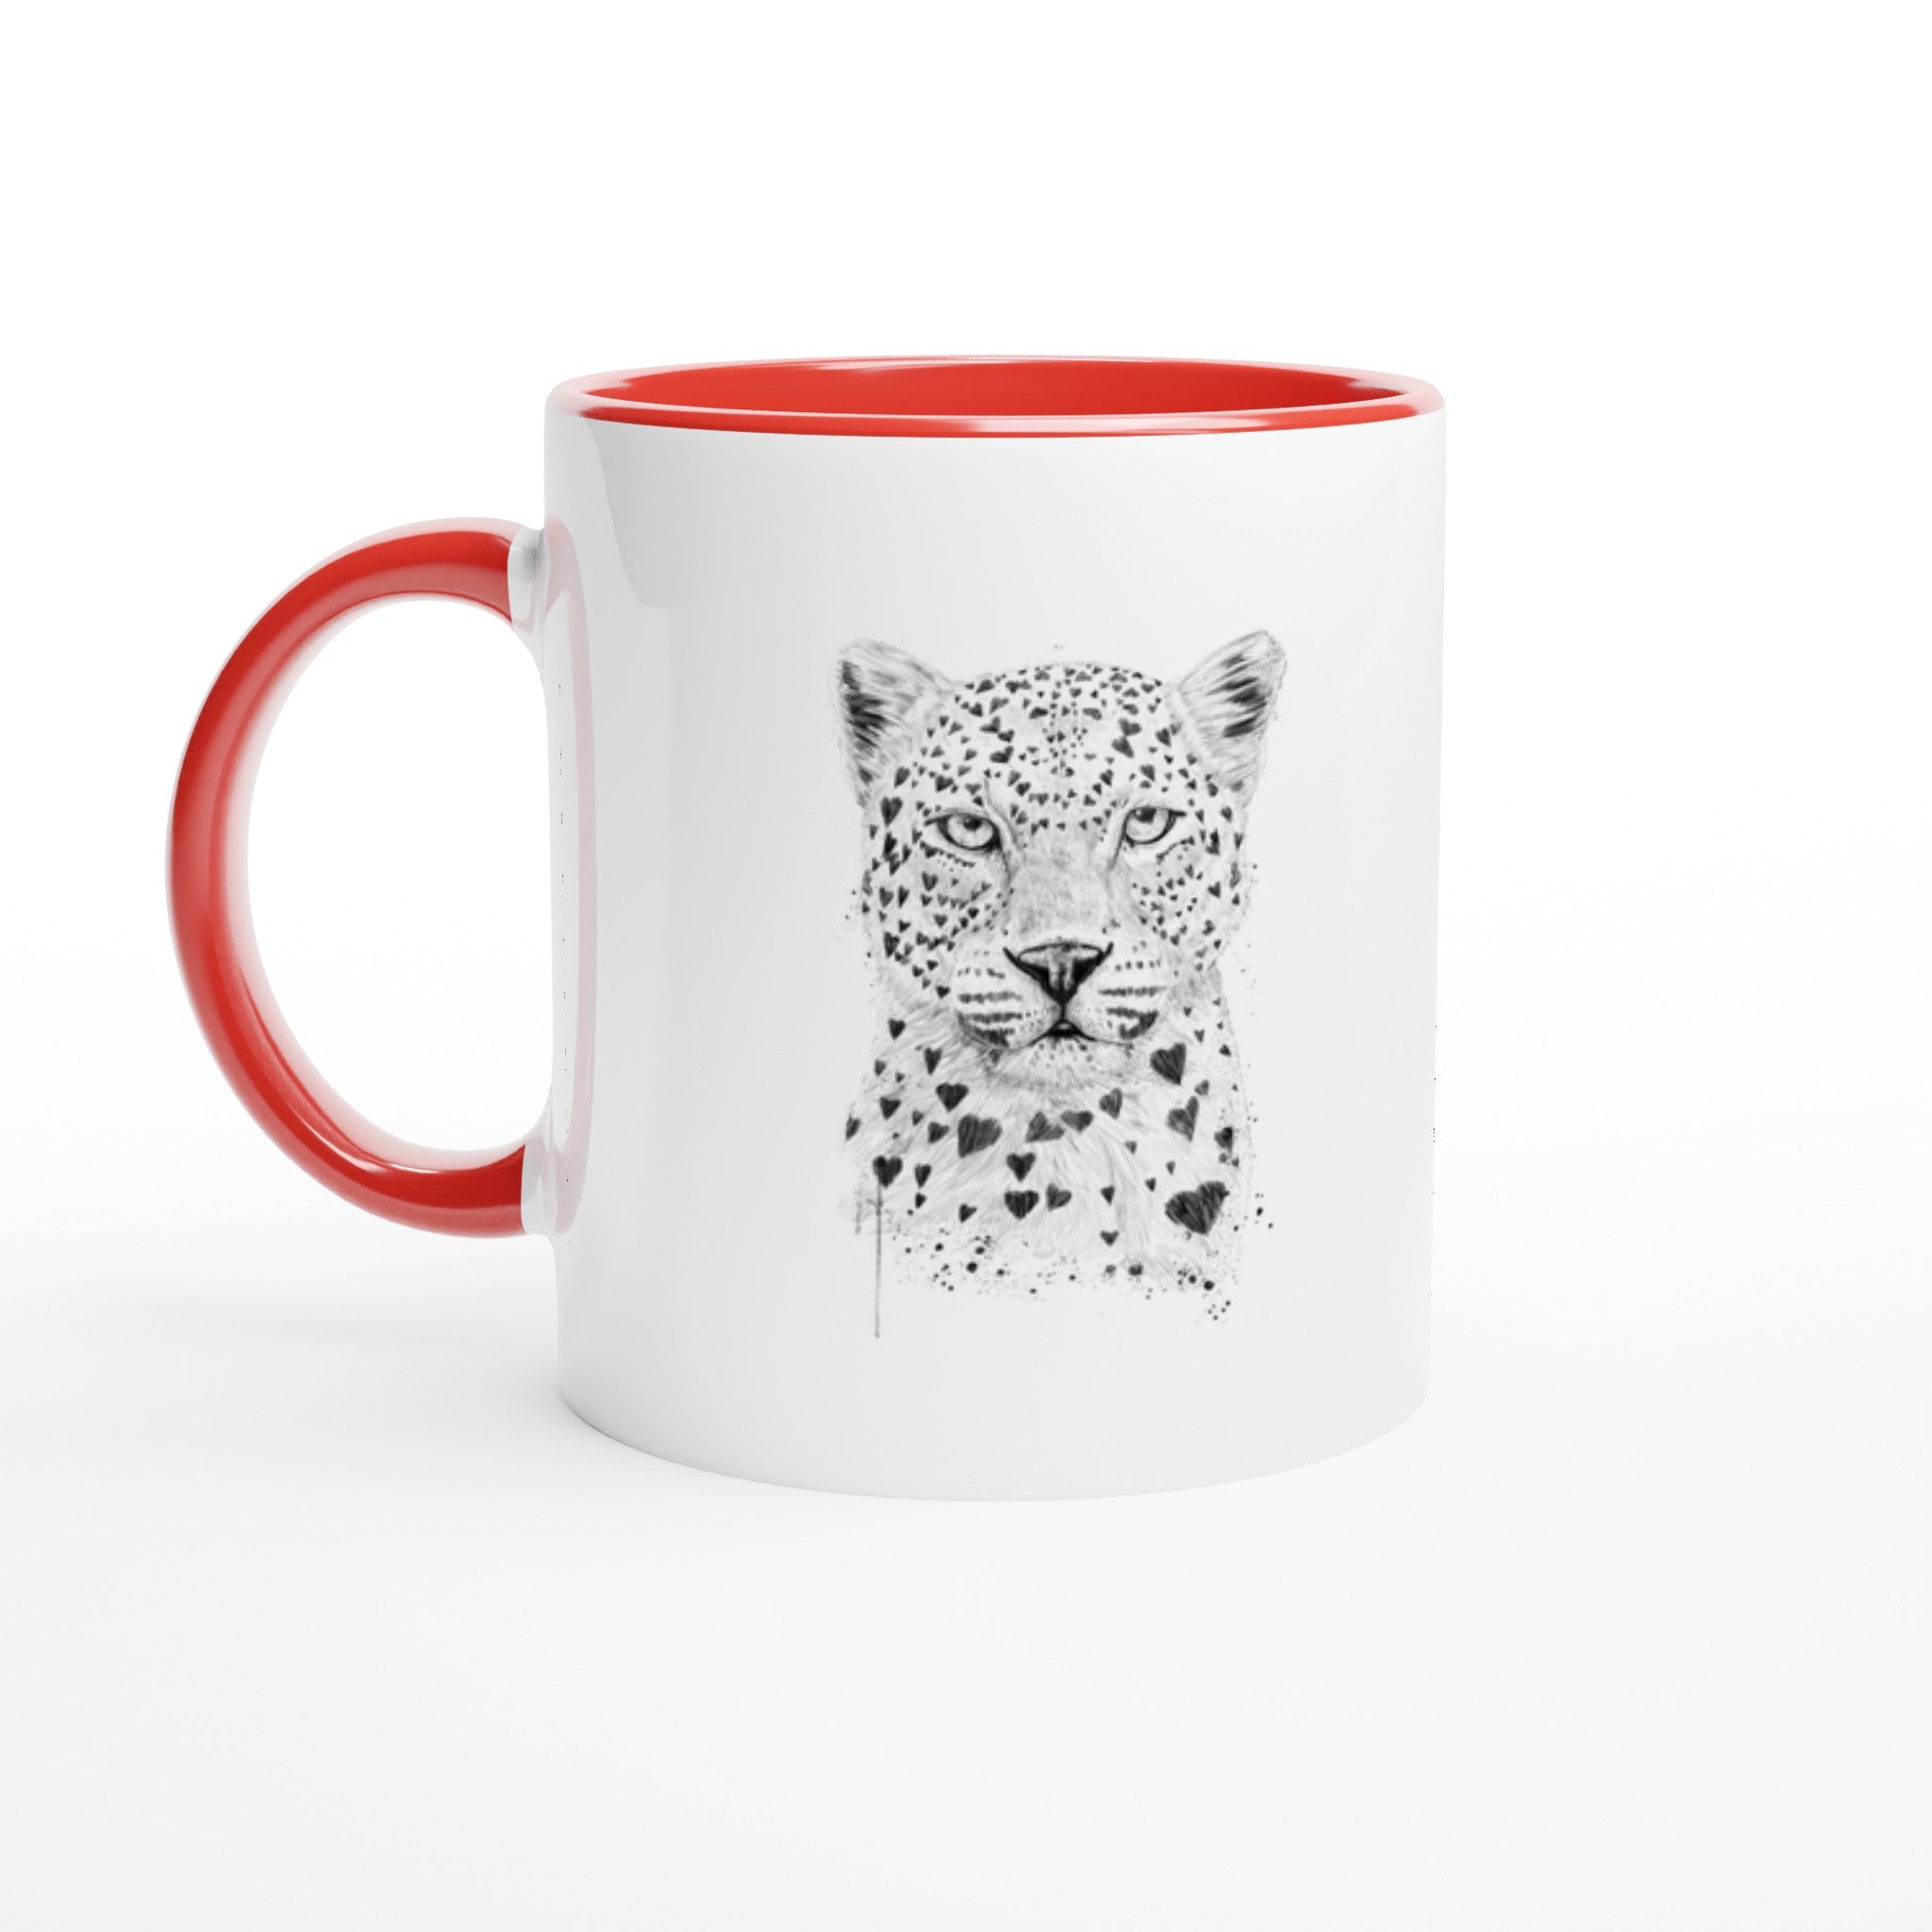 Lovely Leopard Mug - Optimalprint